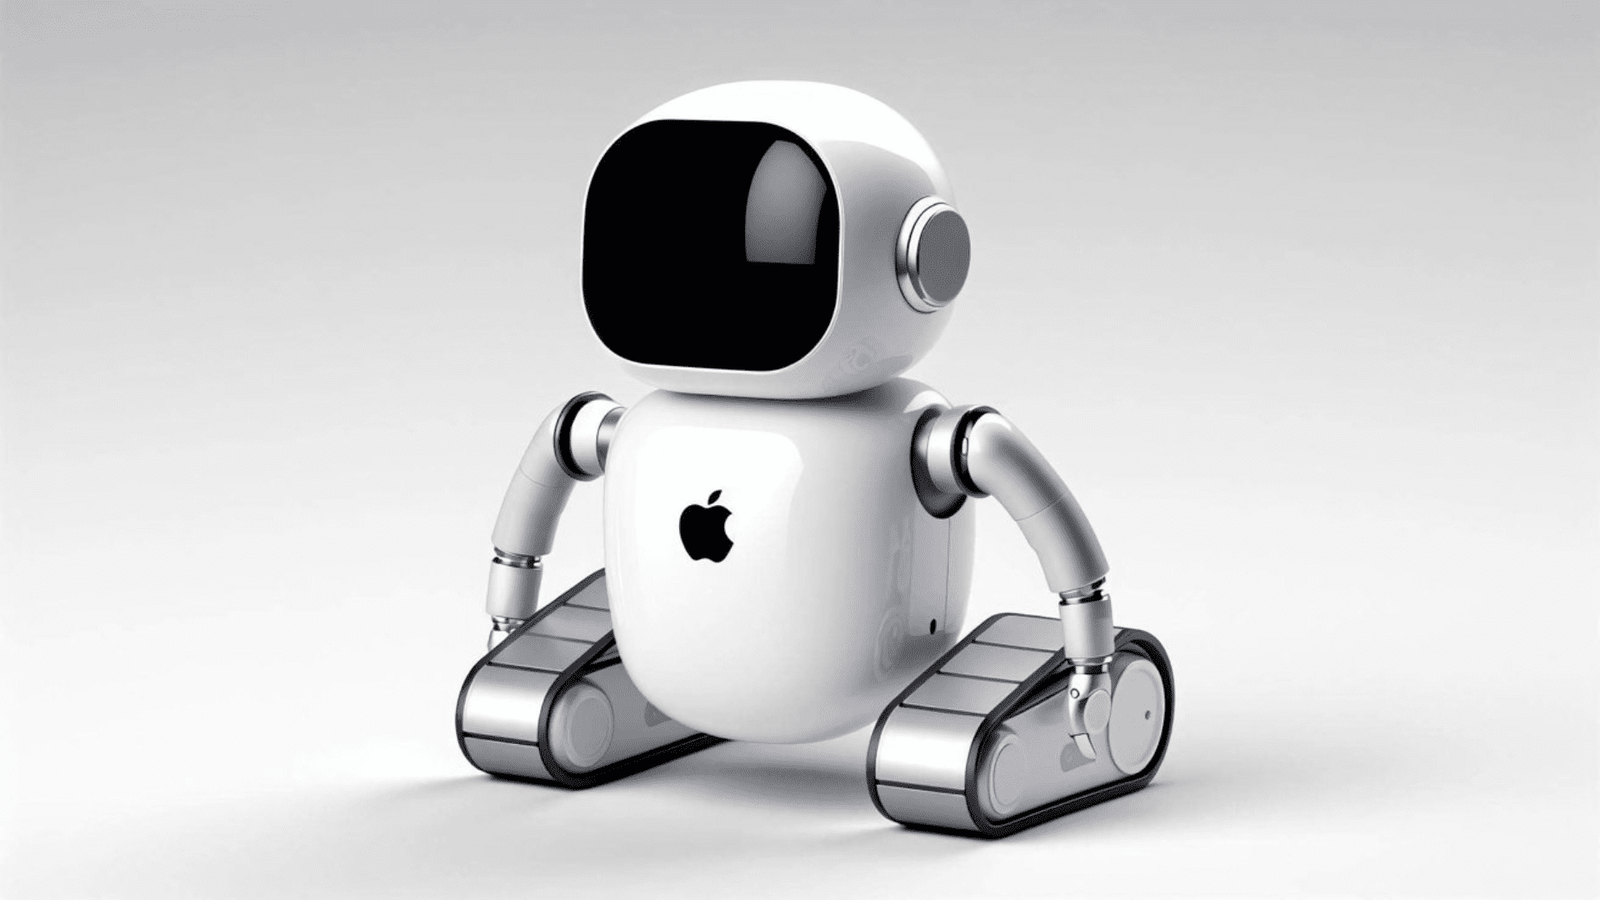 Apple ventures into home robotics with autonomous butler concept